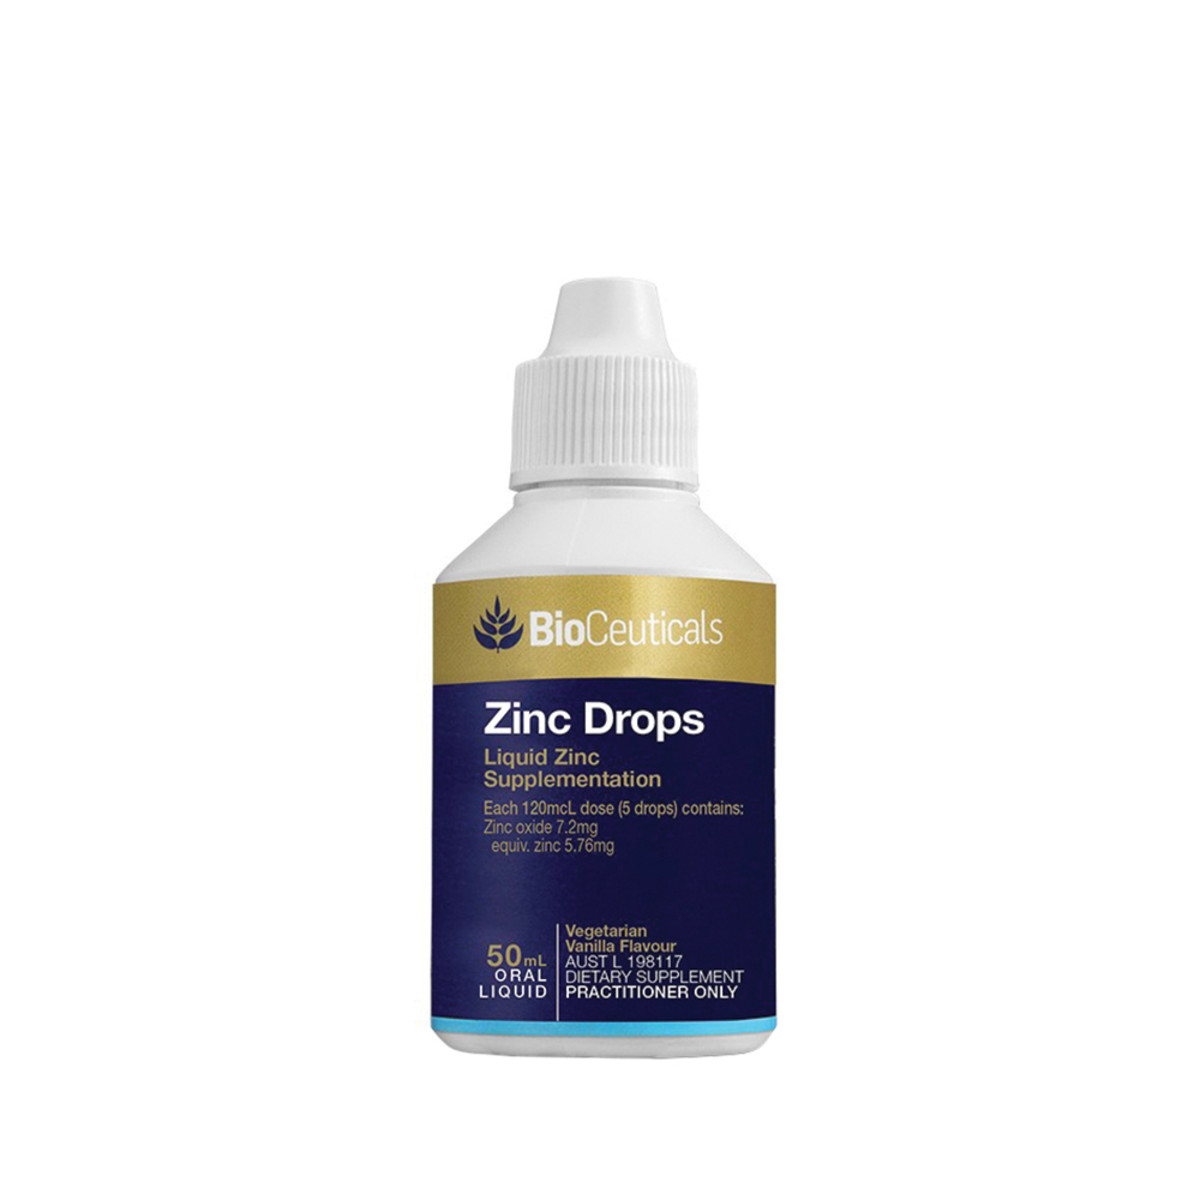 BIOCEUTICALS - Zinc Drops